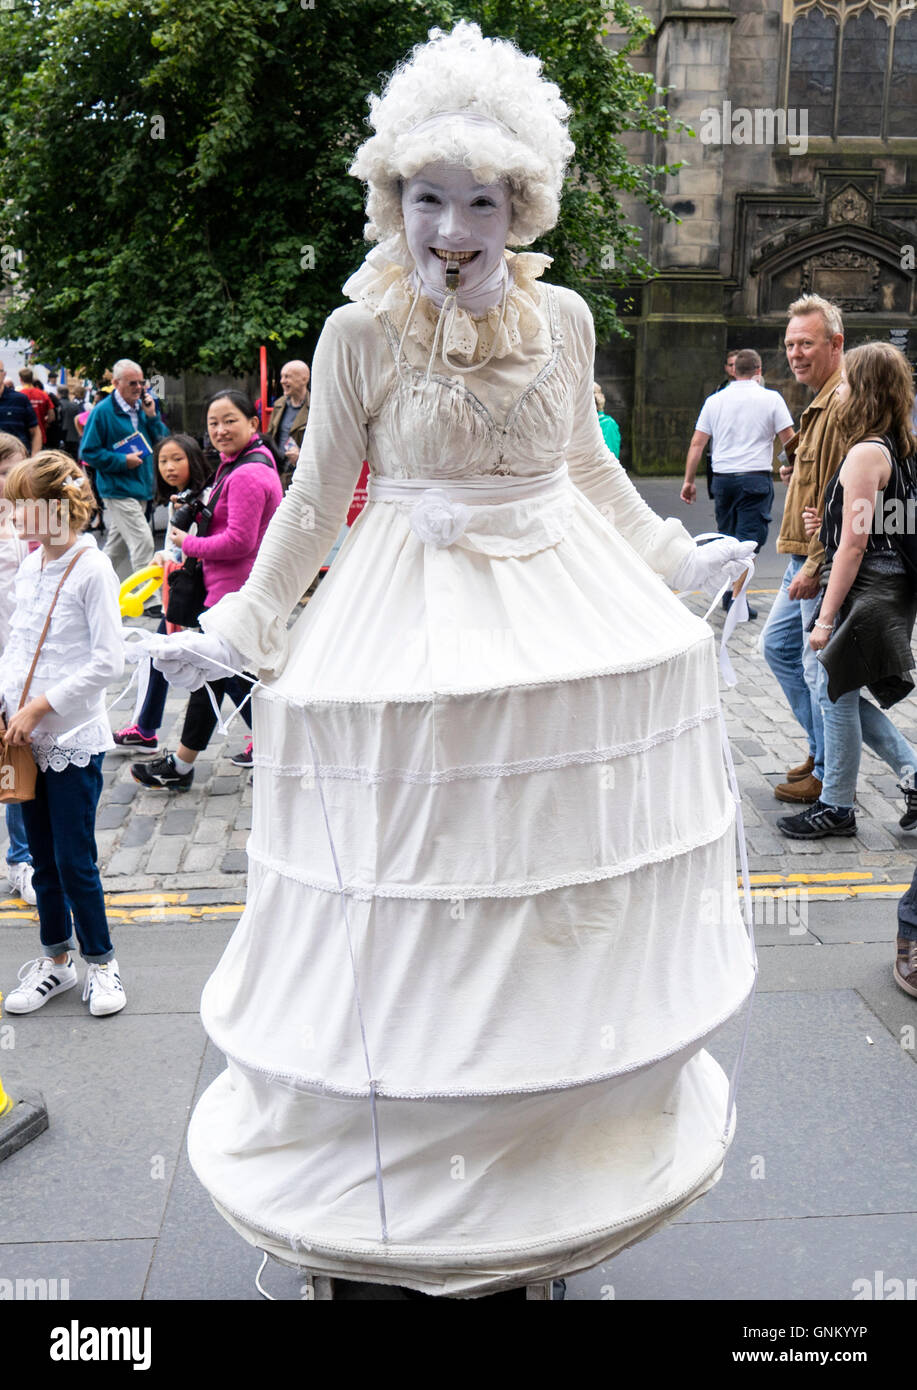 El ejecutante de la calle High Street durante el Festival Fringe de Edimburgo de 2016 en Escocia, Reino Unido Foto de stock